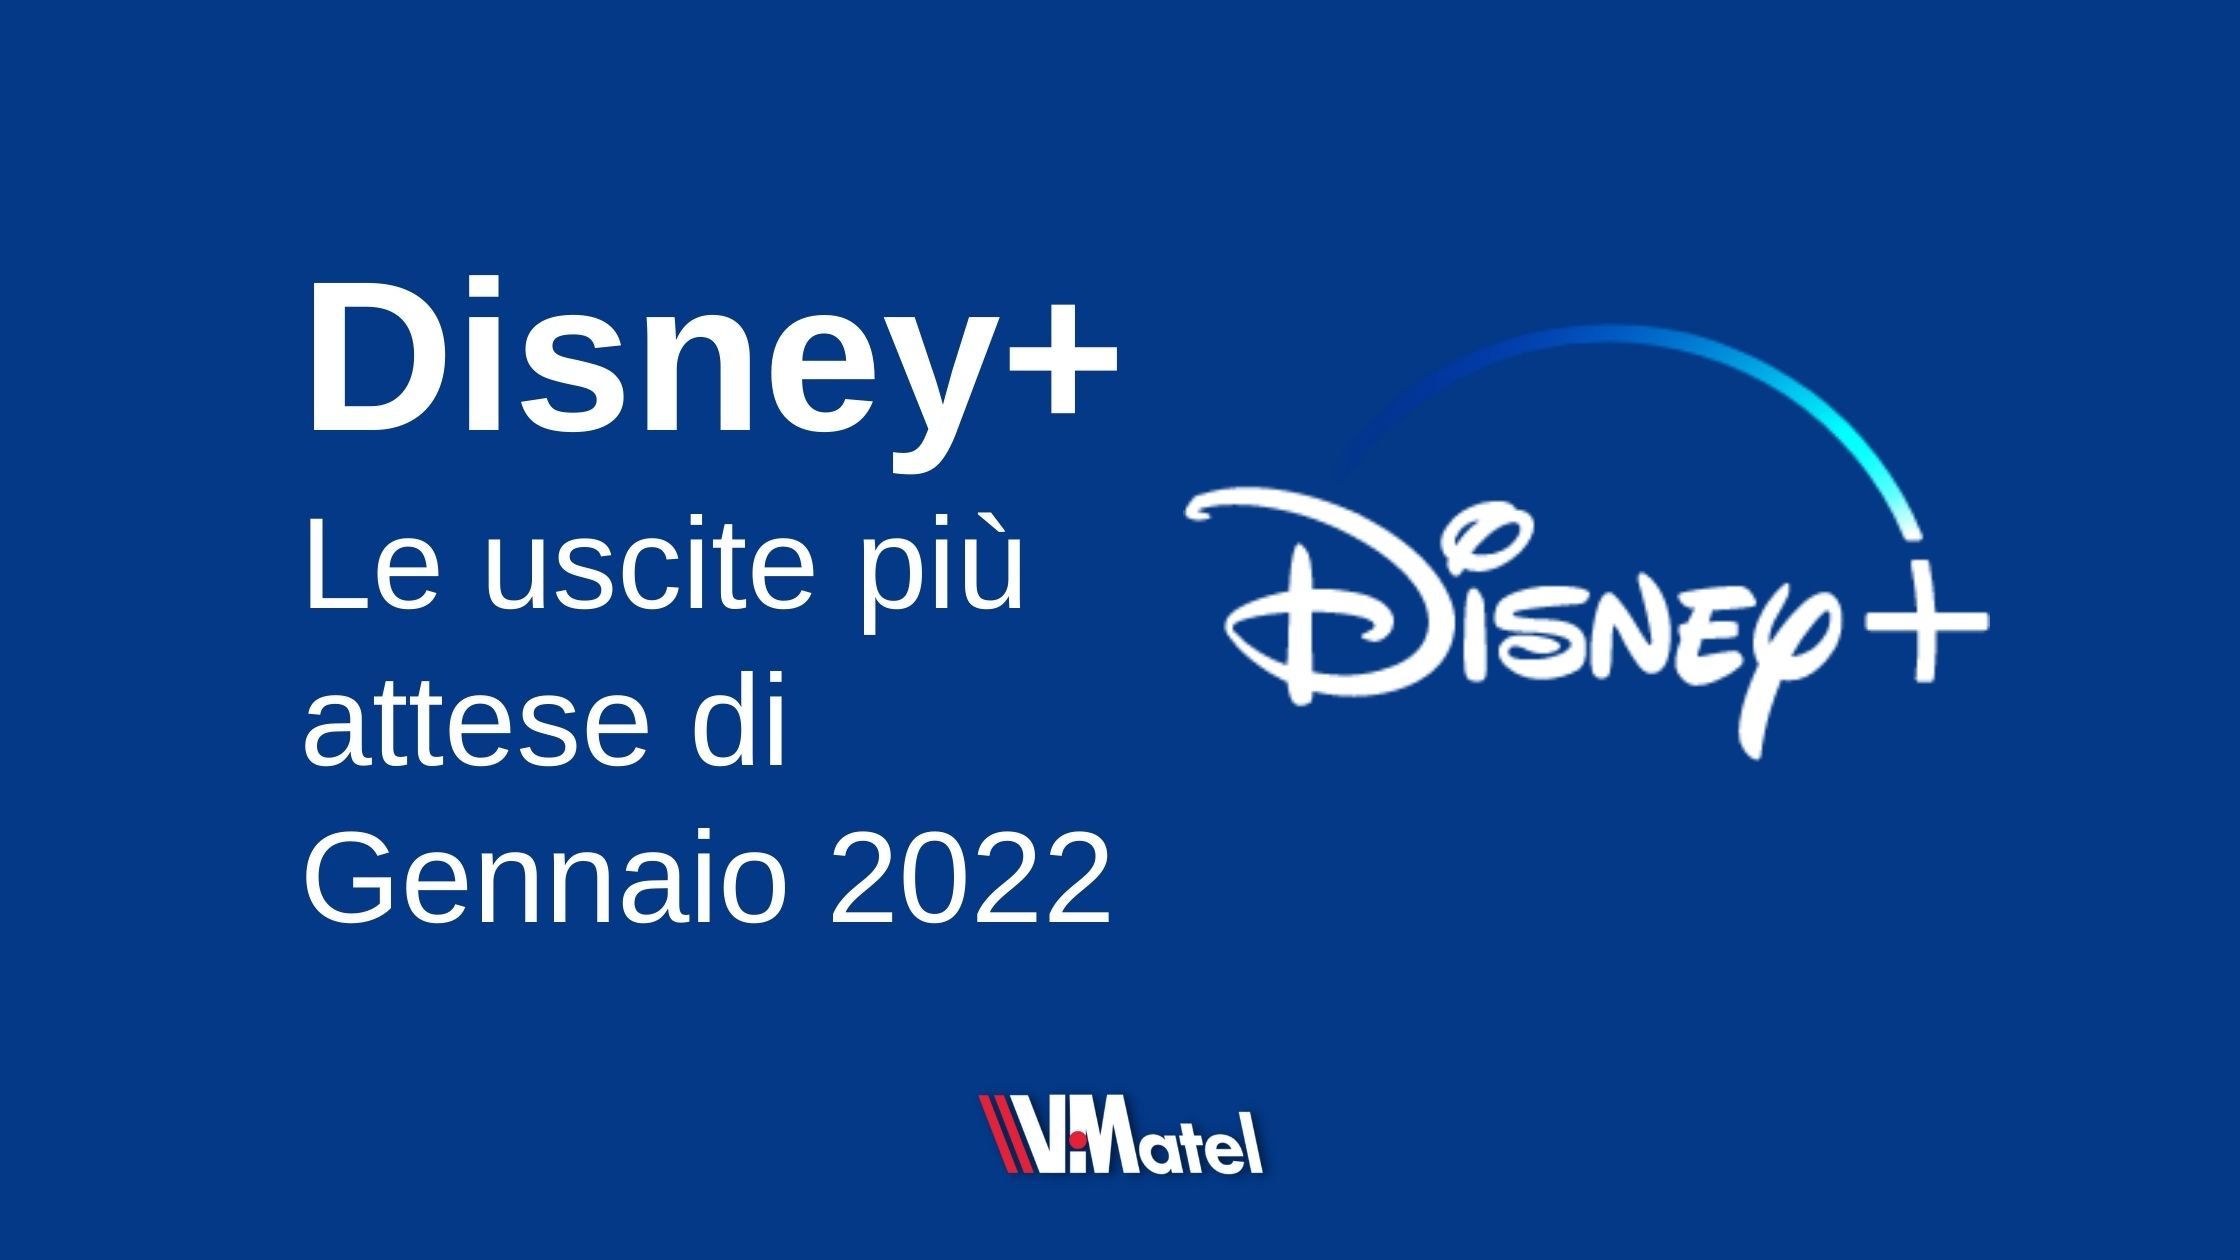 Disney+: le uscite più attese di gennaio 2022